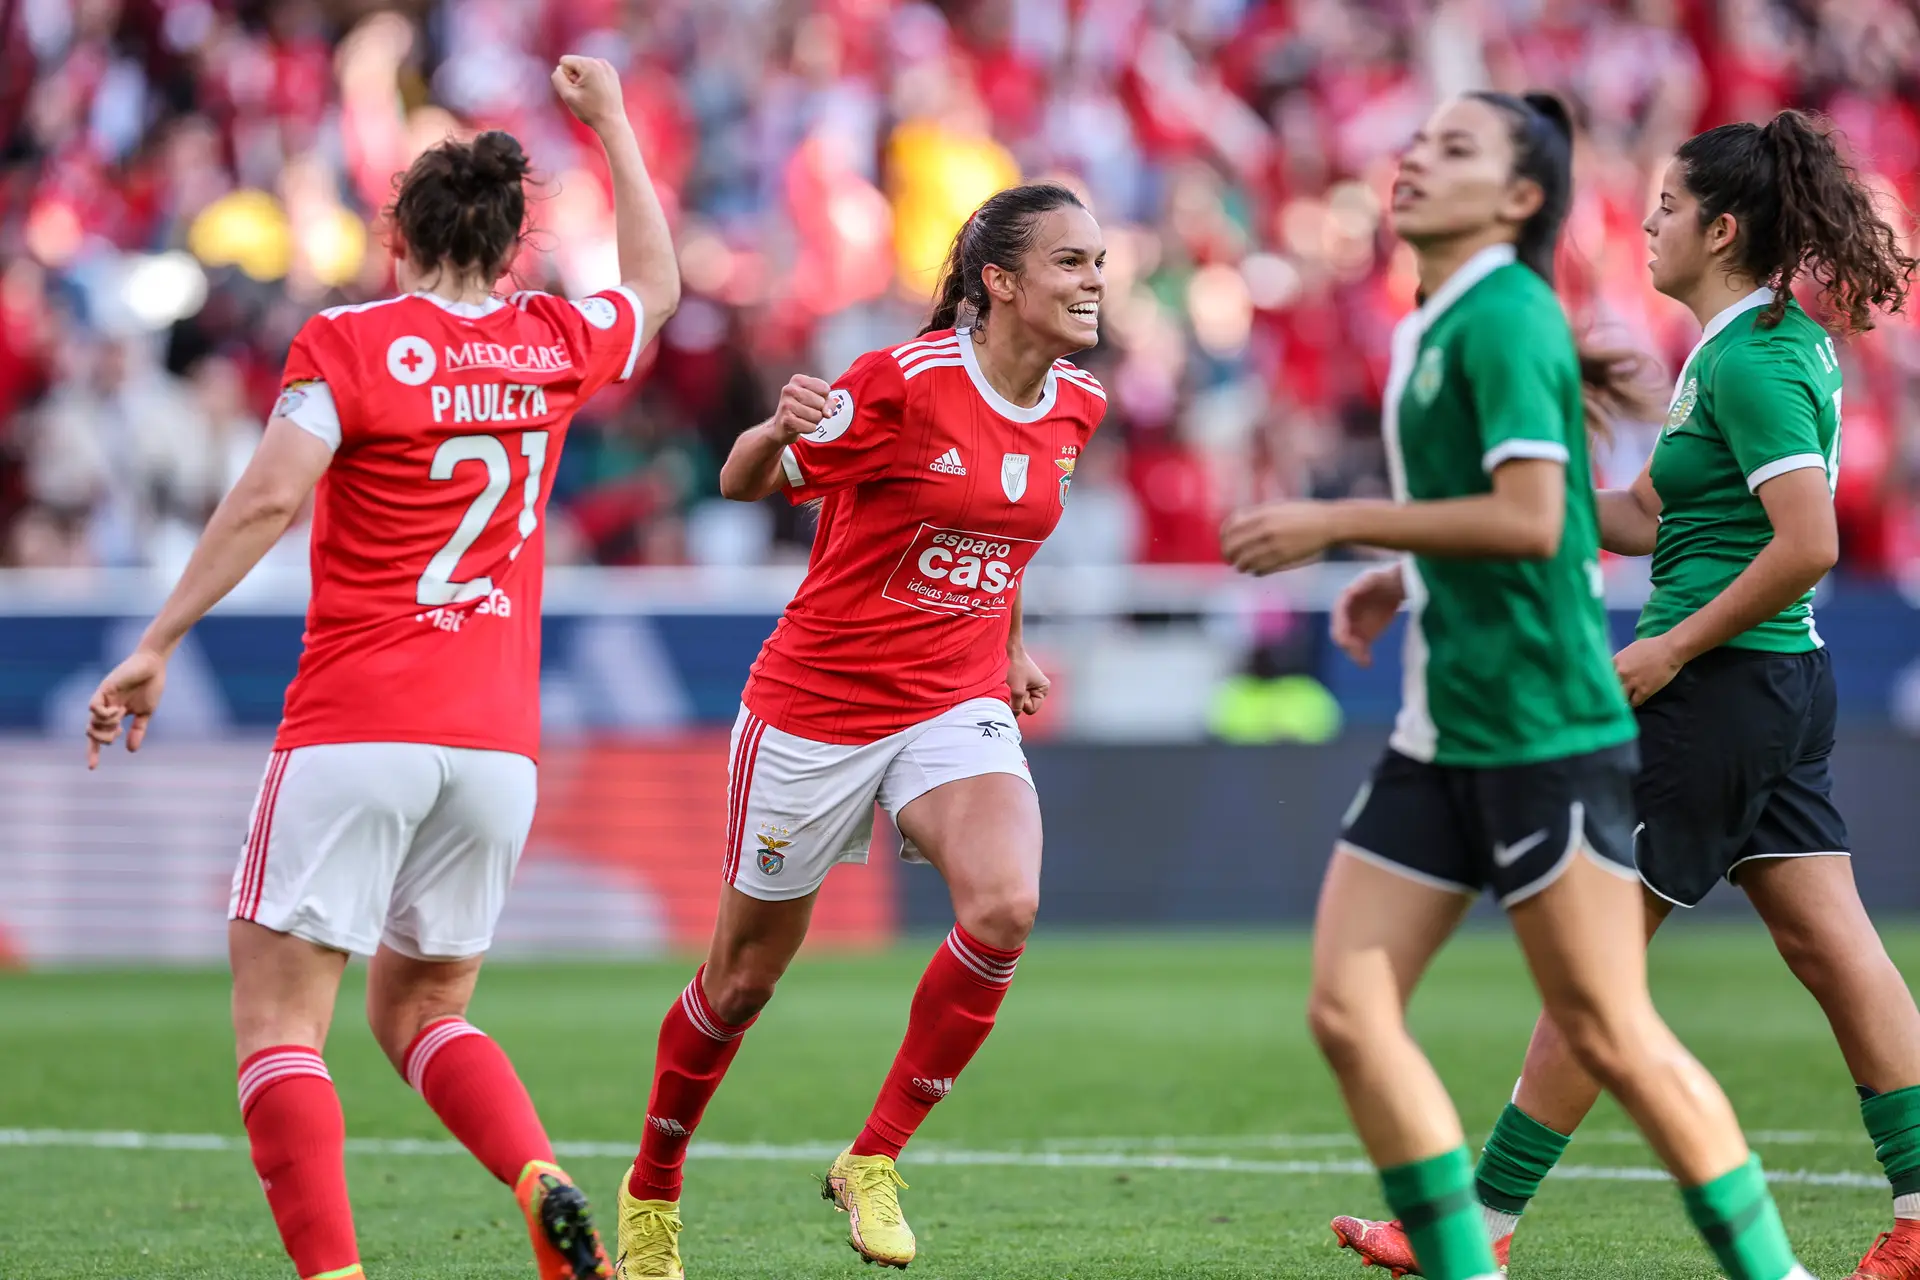 Futebol feminino: Benfica sobe para o 15.º lugar no ranking da UEFA - CNN  Portugal